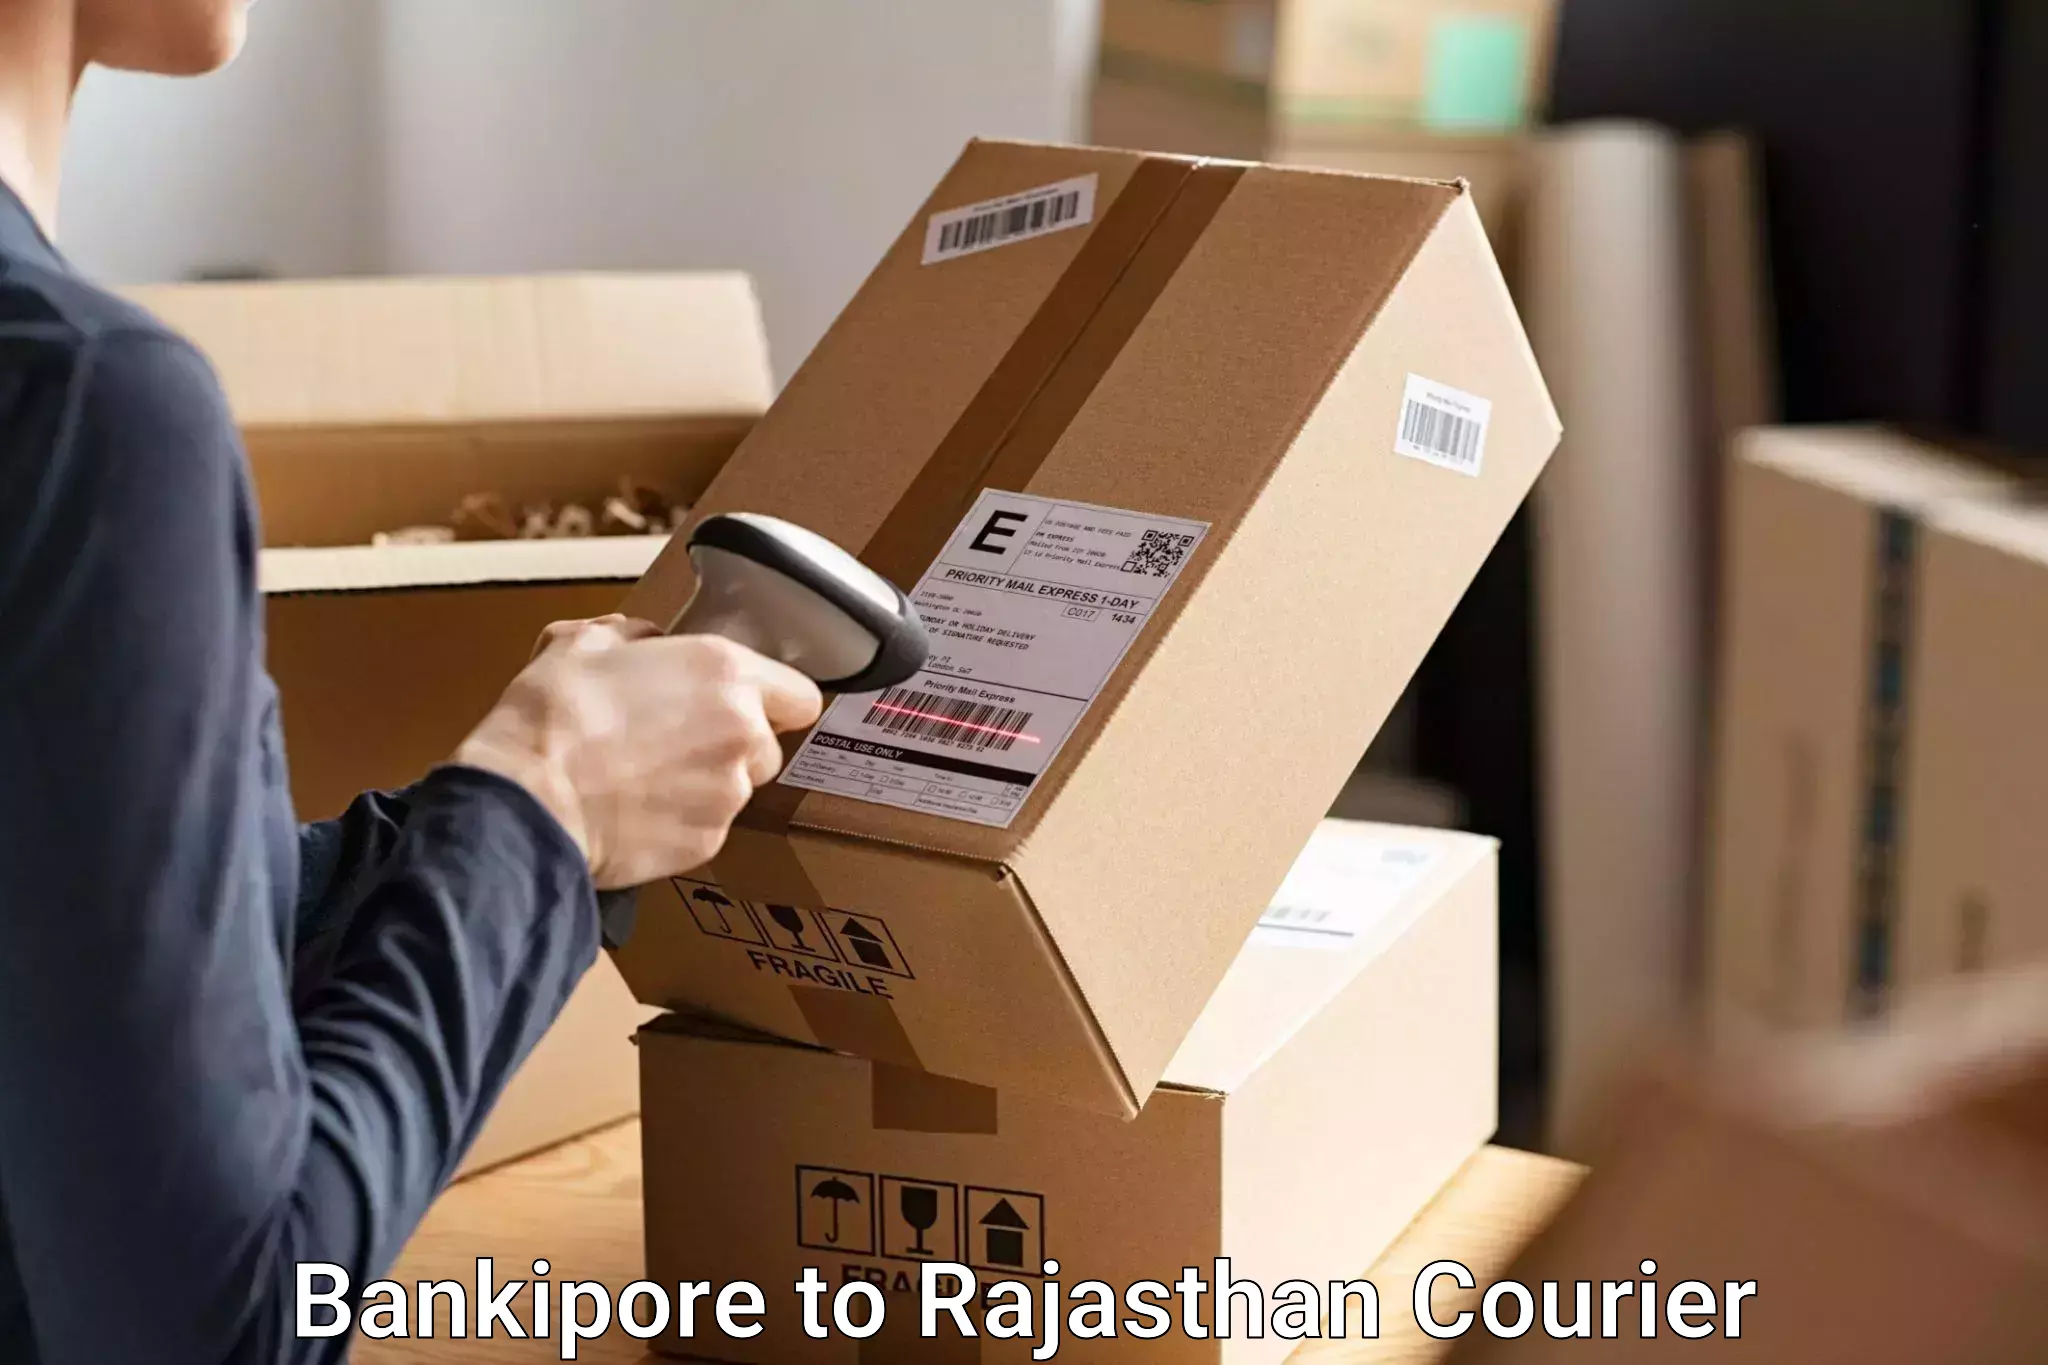 Baggage shipping schedule Bankipore to NIT Jaipur